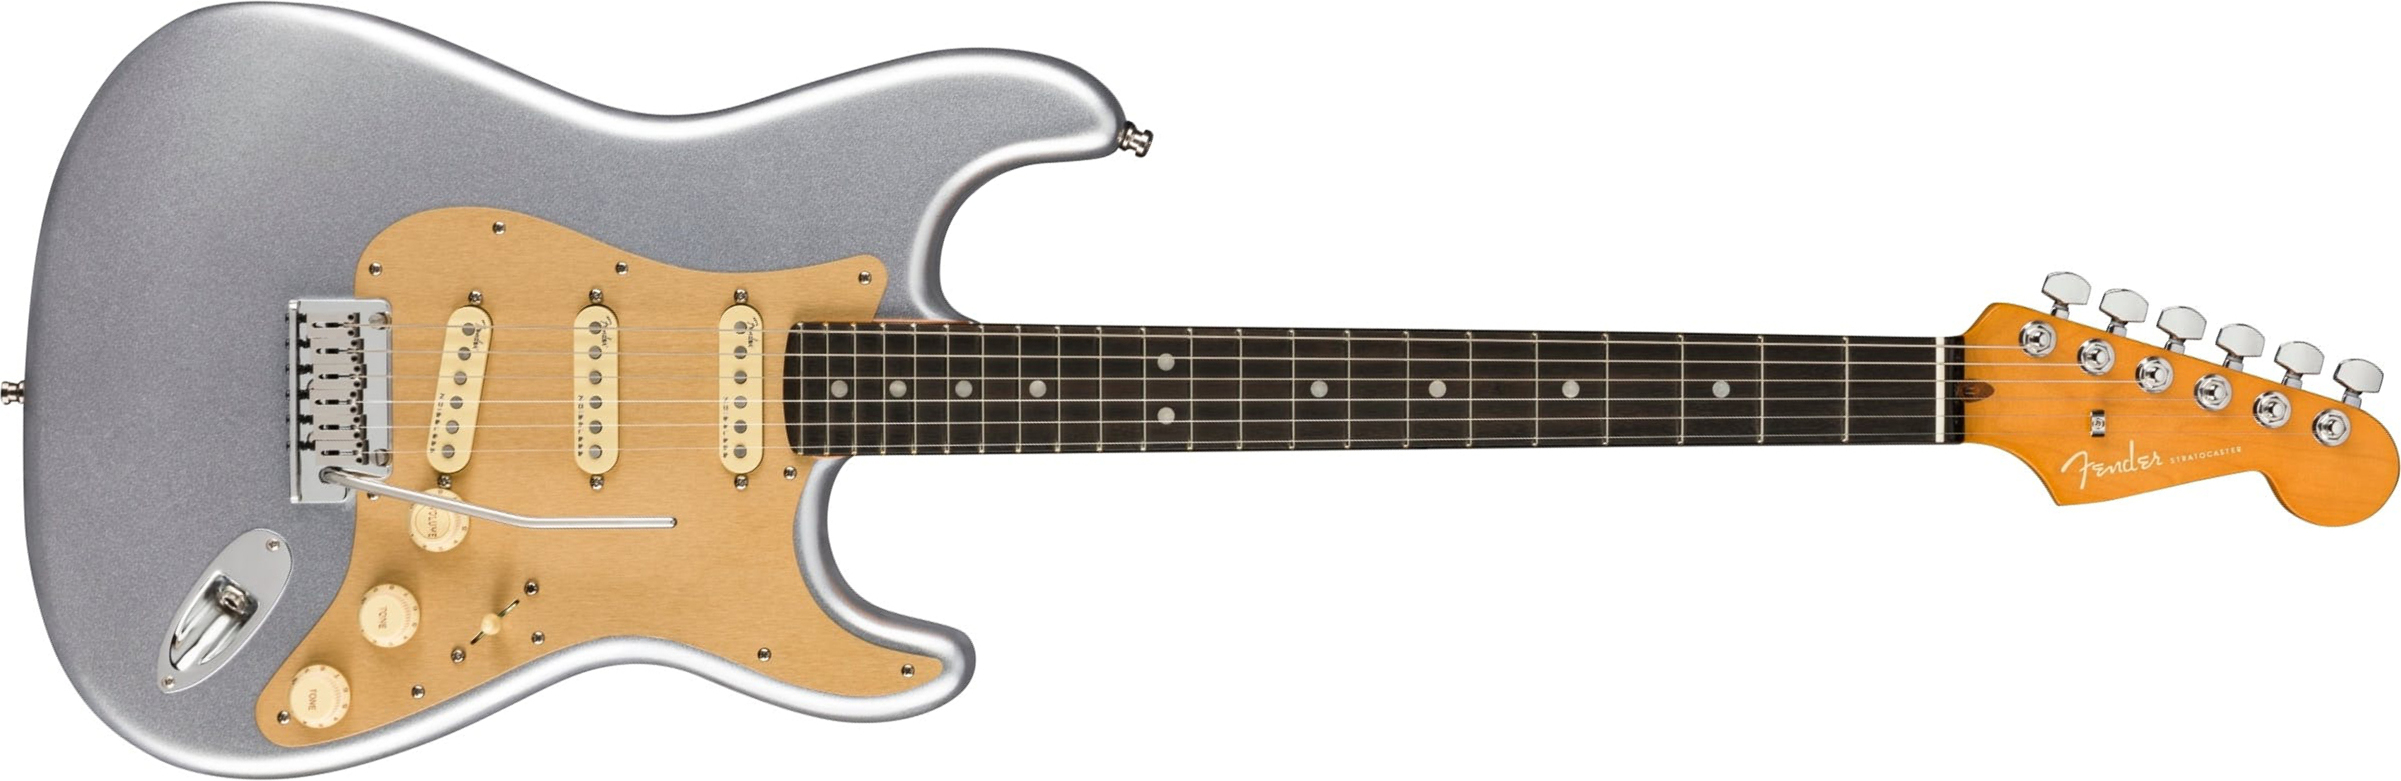 Fender Strat American Ultra Ltd Usa 3s Trem Eb - Quicksilver - Elektrische gitaar in Str-vorm - Main picture